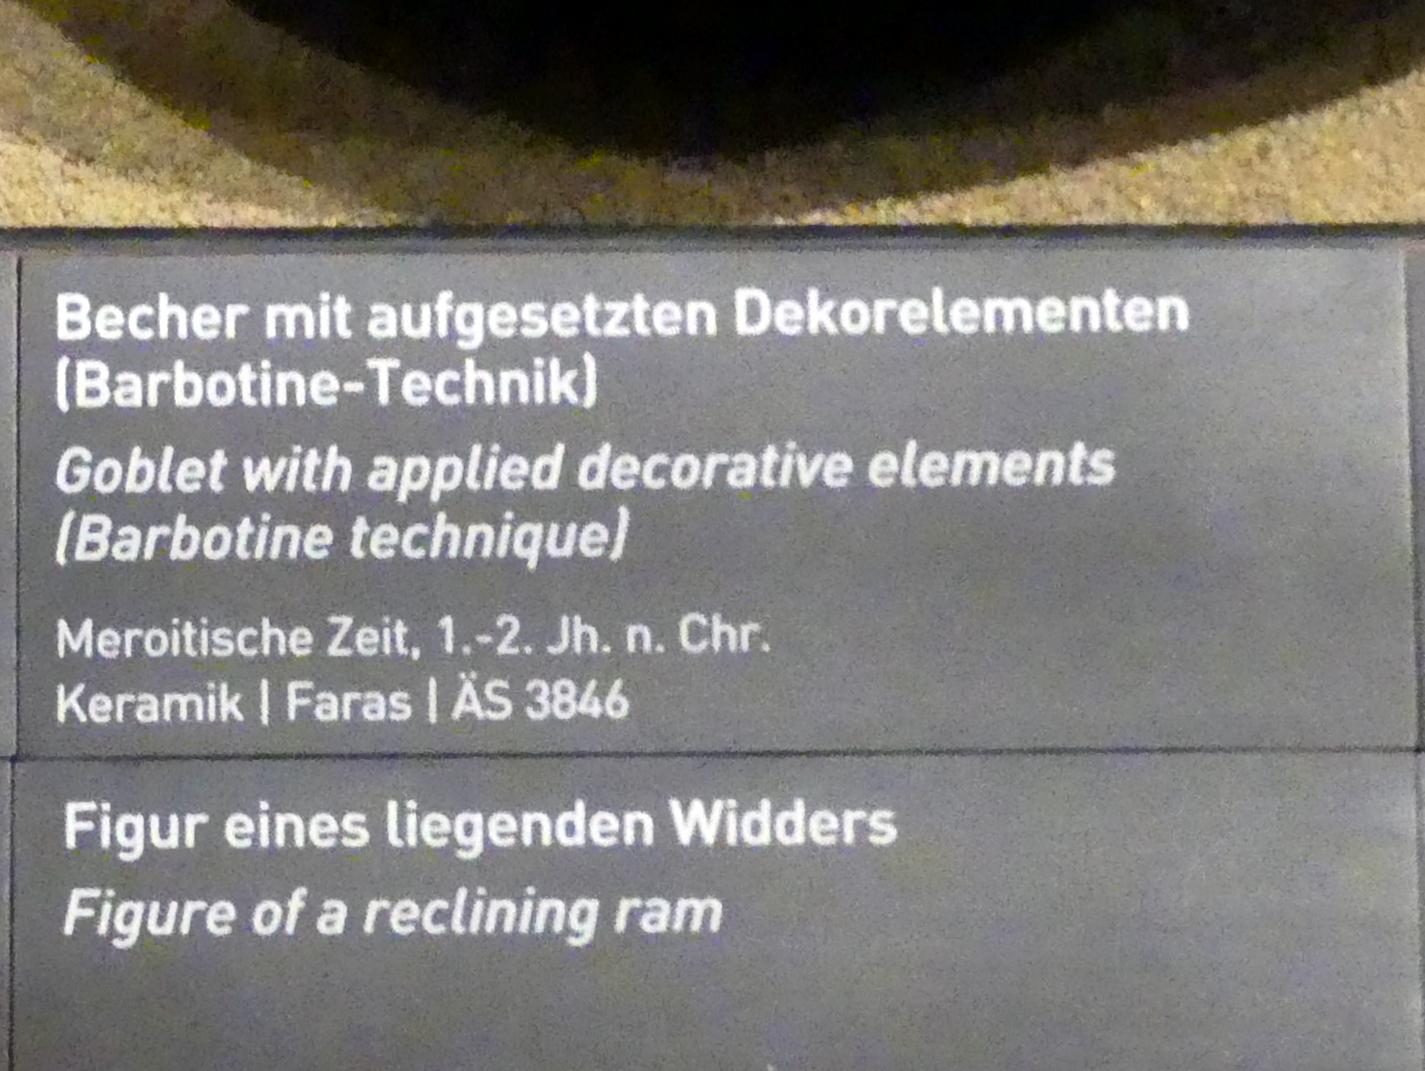 Becher mit aufgesetzten Dekorelementen (Barbotine-Technik), Meroitische Zeit, 200 v. Chr. - 500 n. Chr., 1 - 200, Bild 2/2